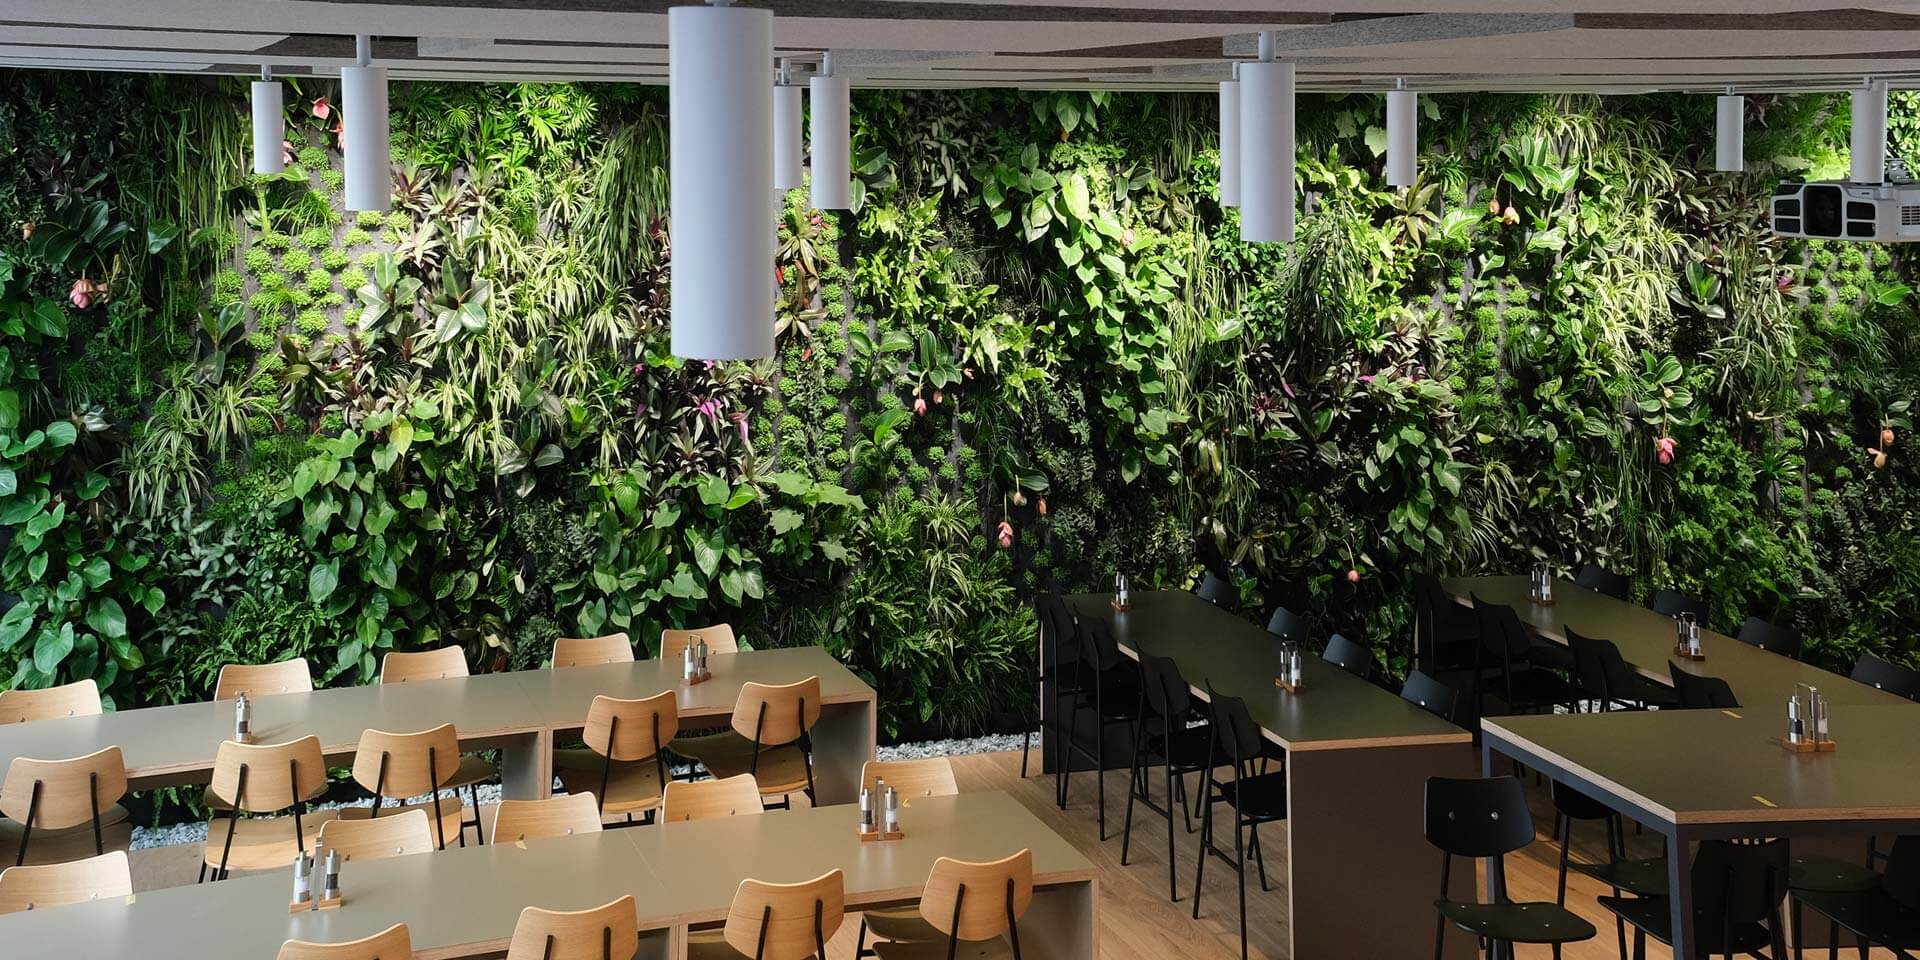 interieur eines modernen cafés mit großer *pflanzenwand von vivit – schweizer hersteller* an den wänden, mit holztischen, schwarzen stühlen und sanfter beleuchtung. grüne architektur!